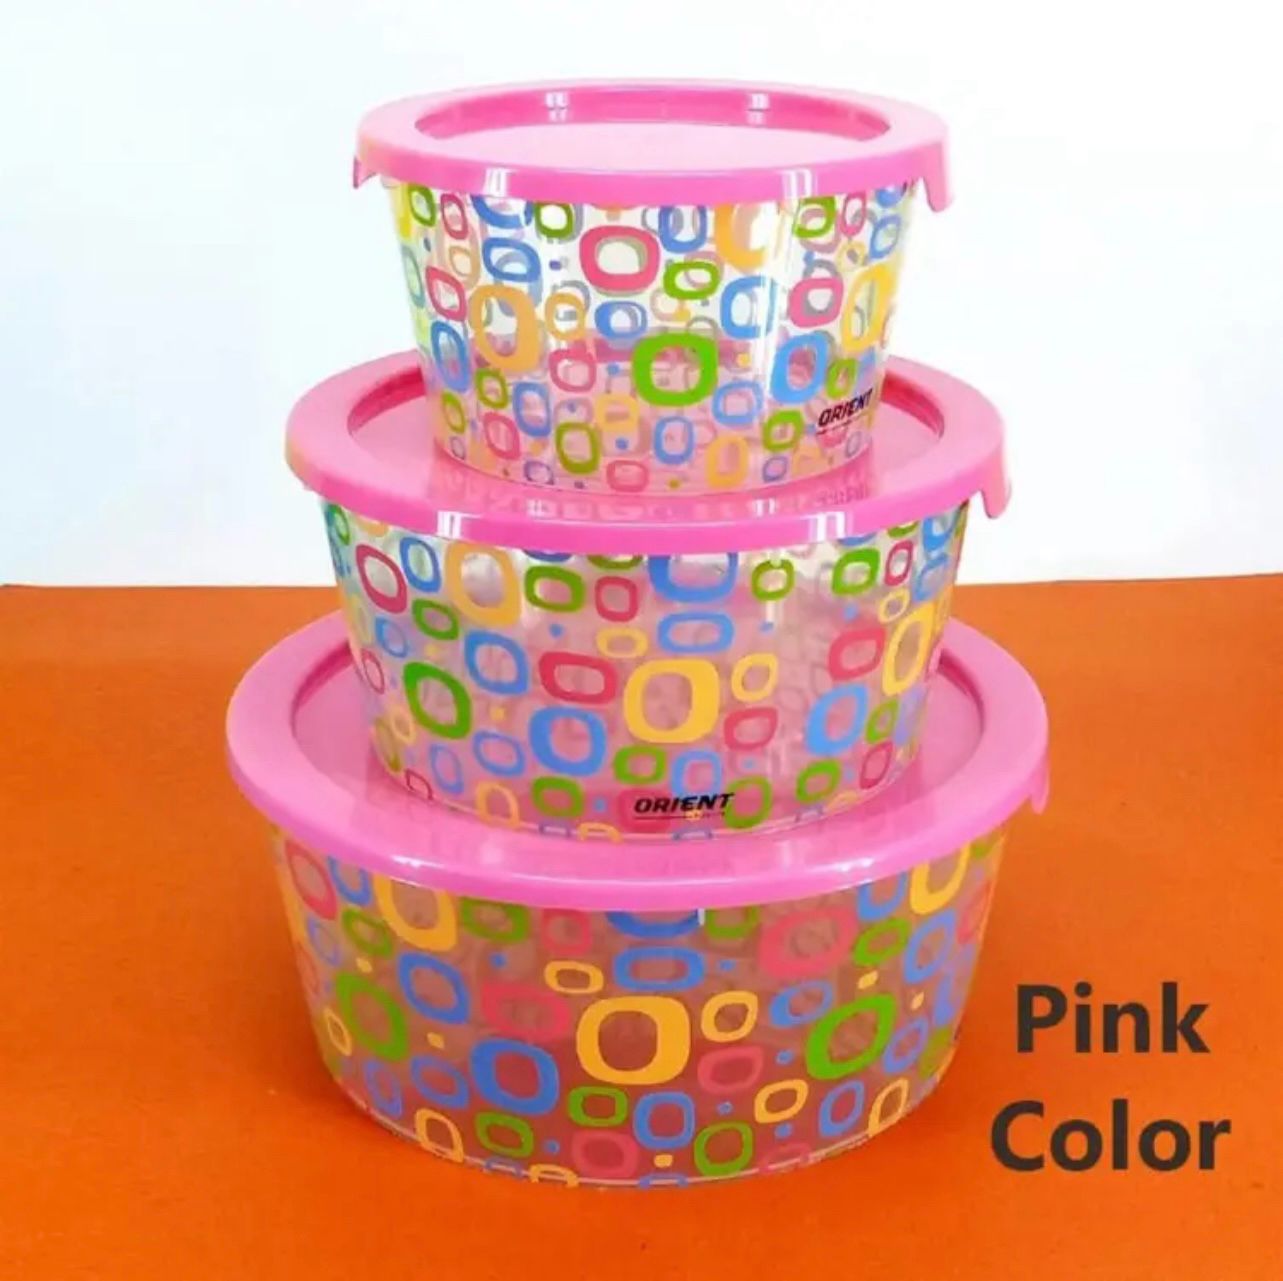 Premium Plastic Bowl set in 3 Different colors